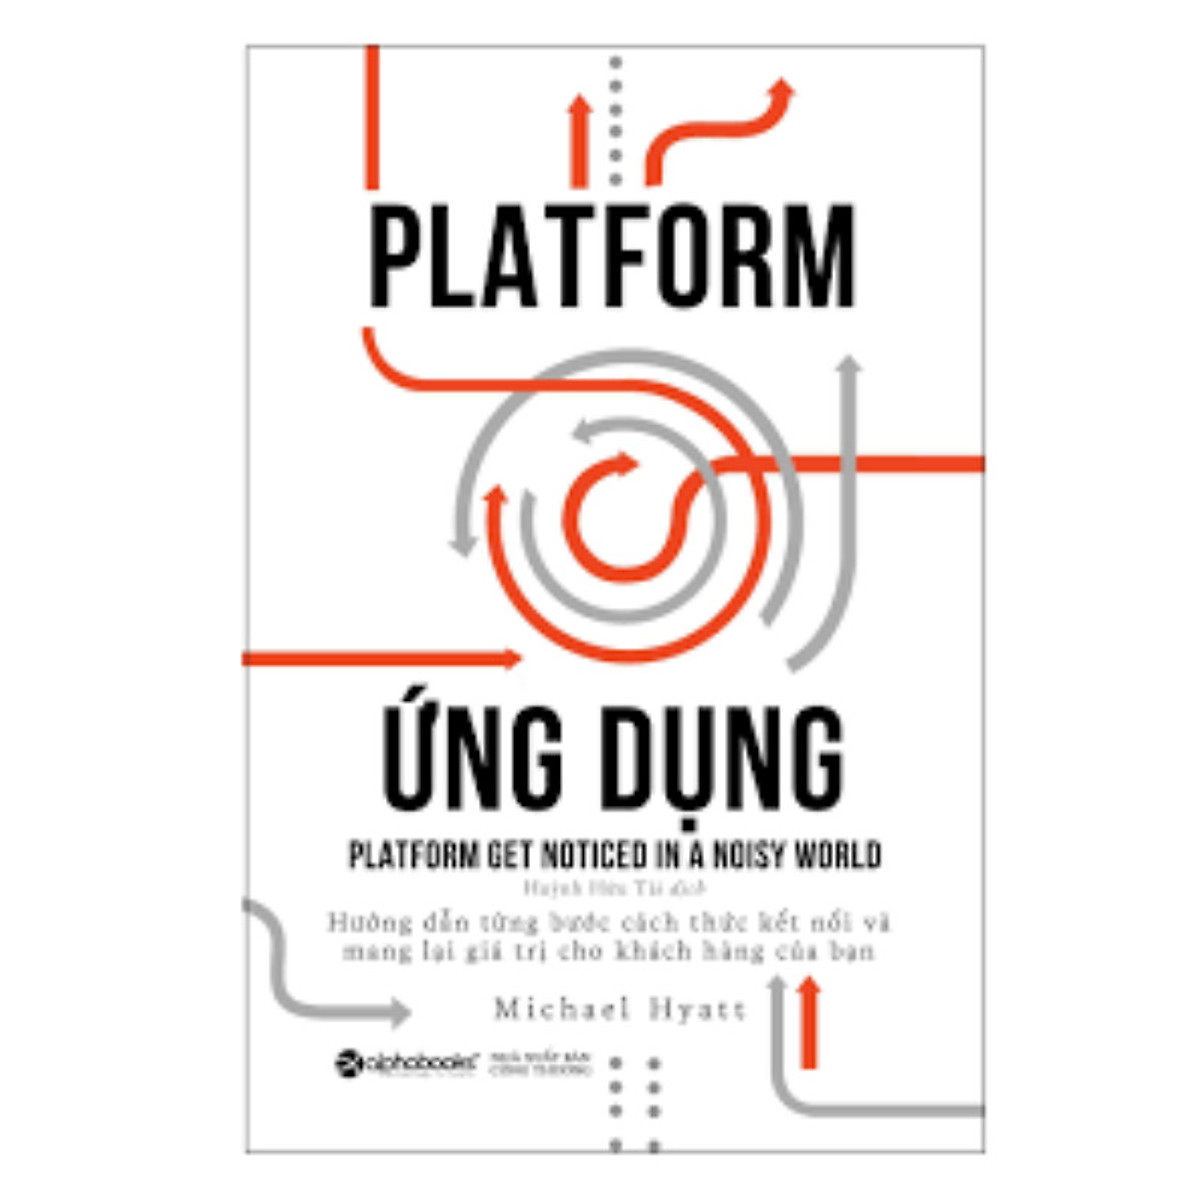 Bộ Sách Về Xây Dựng Nền Tảng Flatform: Platform Revolution - Cuộc Cách Mạng Nền Tảng + Platform Ứng Dụng